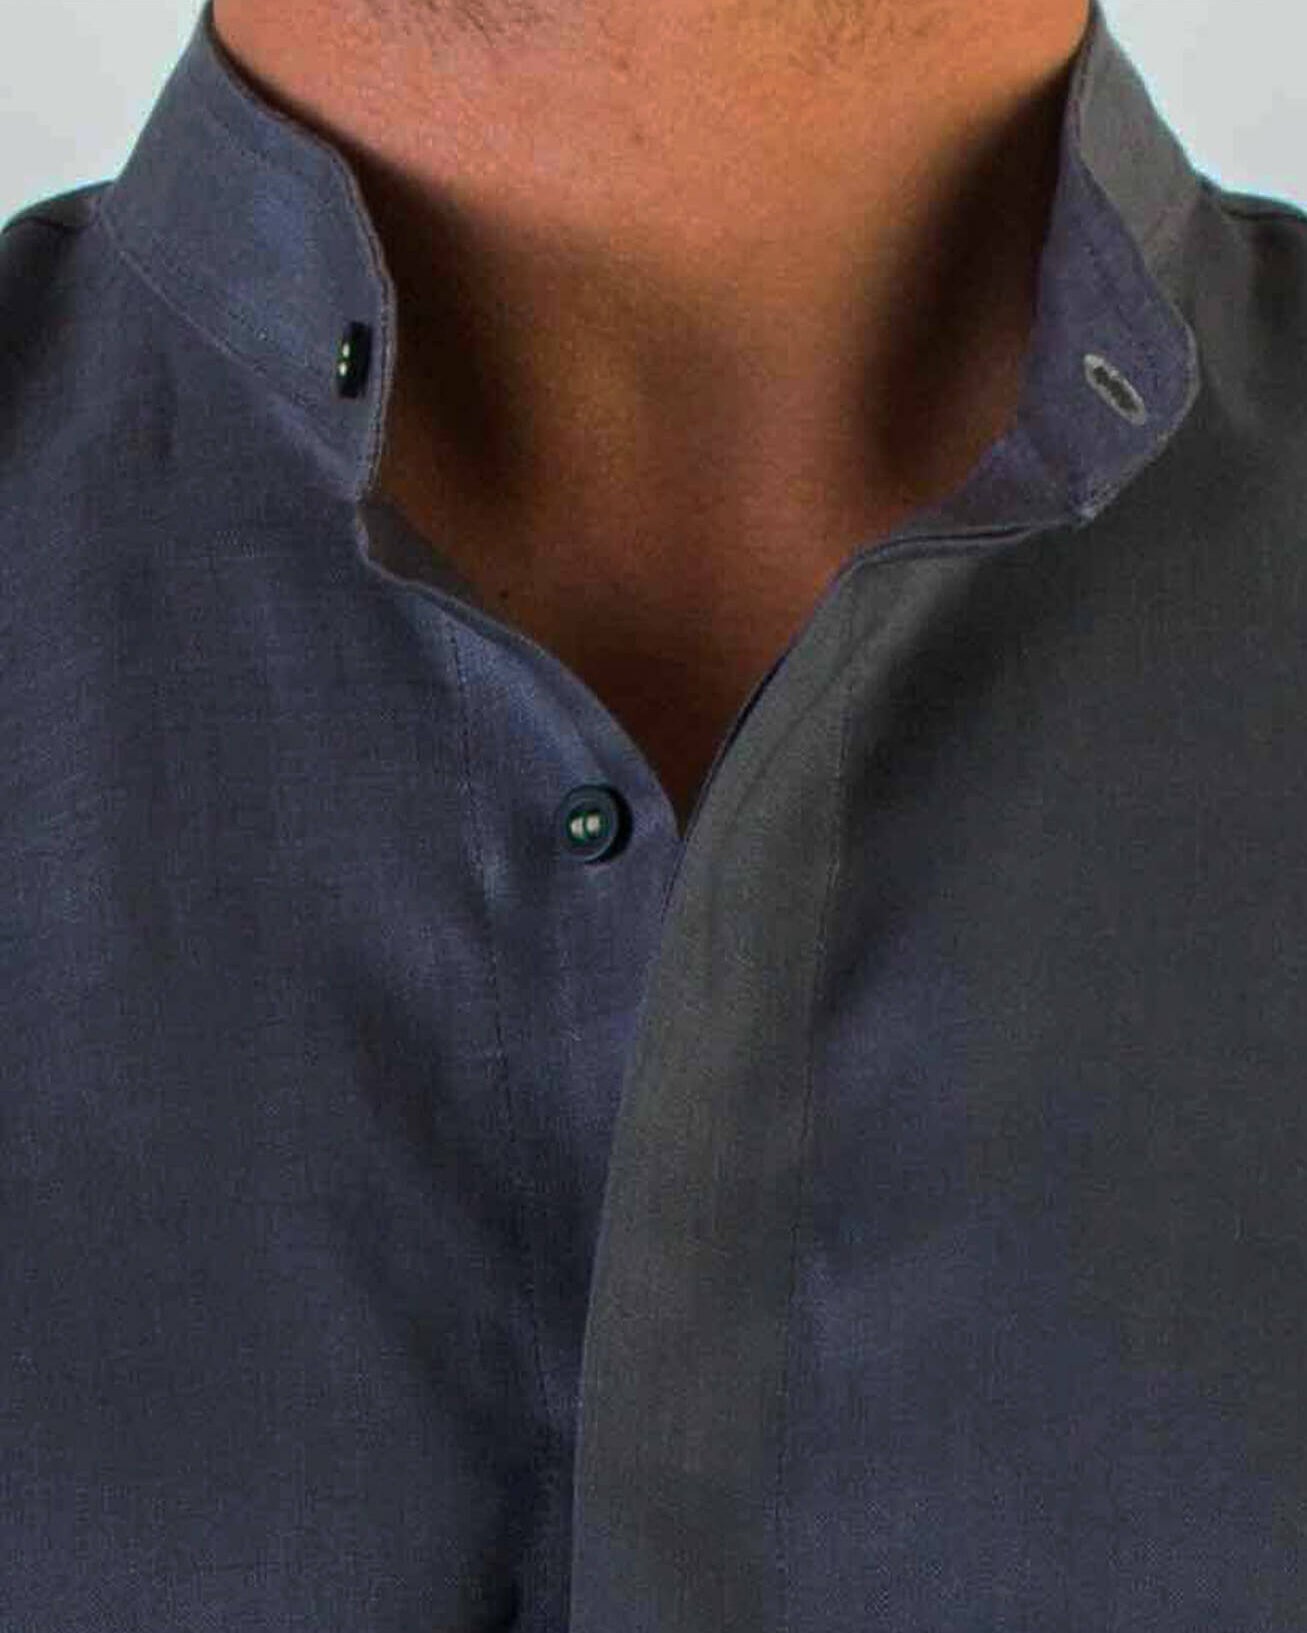 MENORCA Linen Shirt - Dark Grey/Black - CRASQI